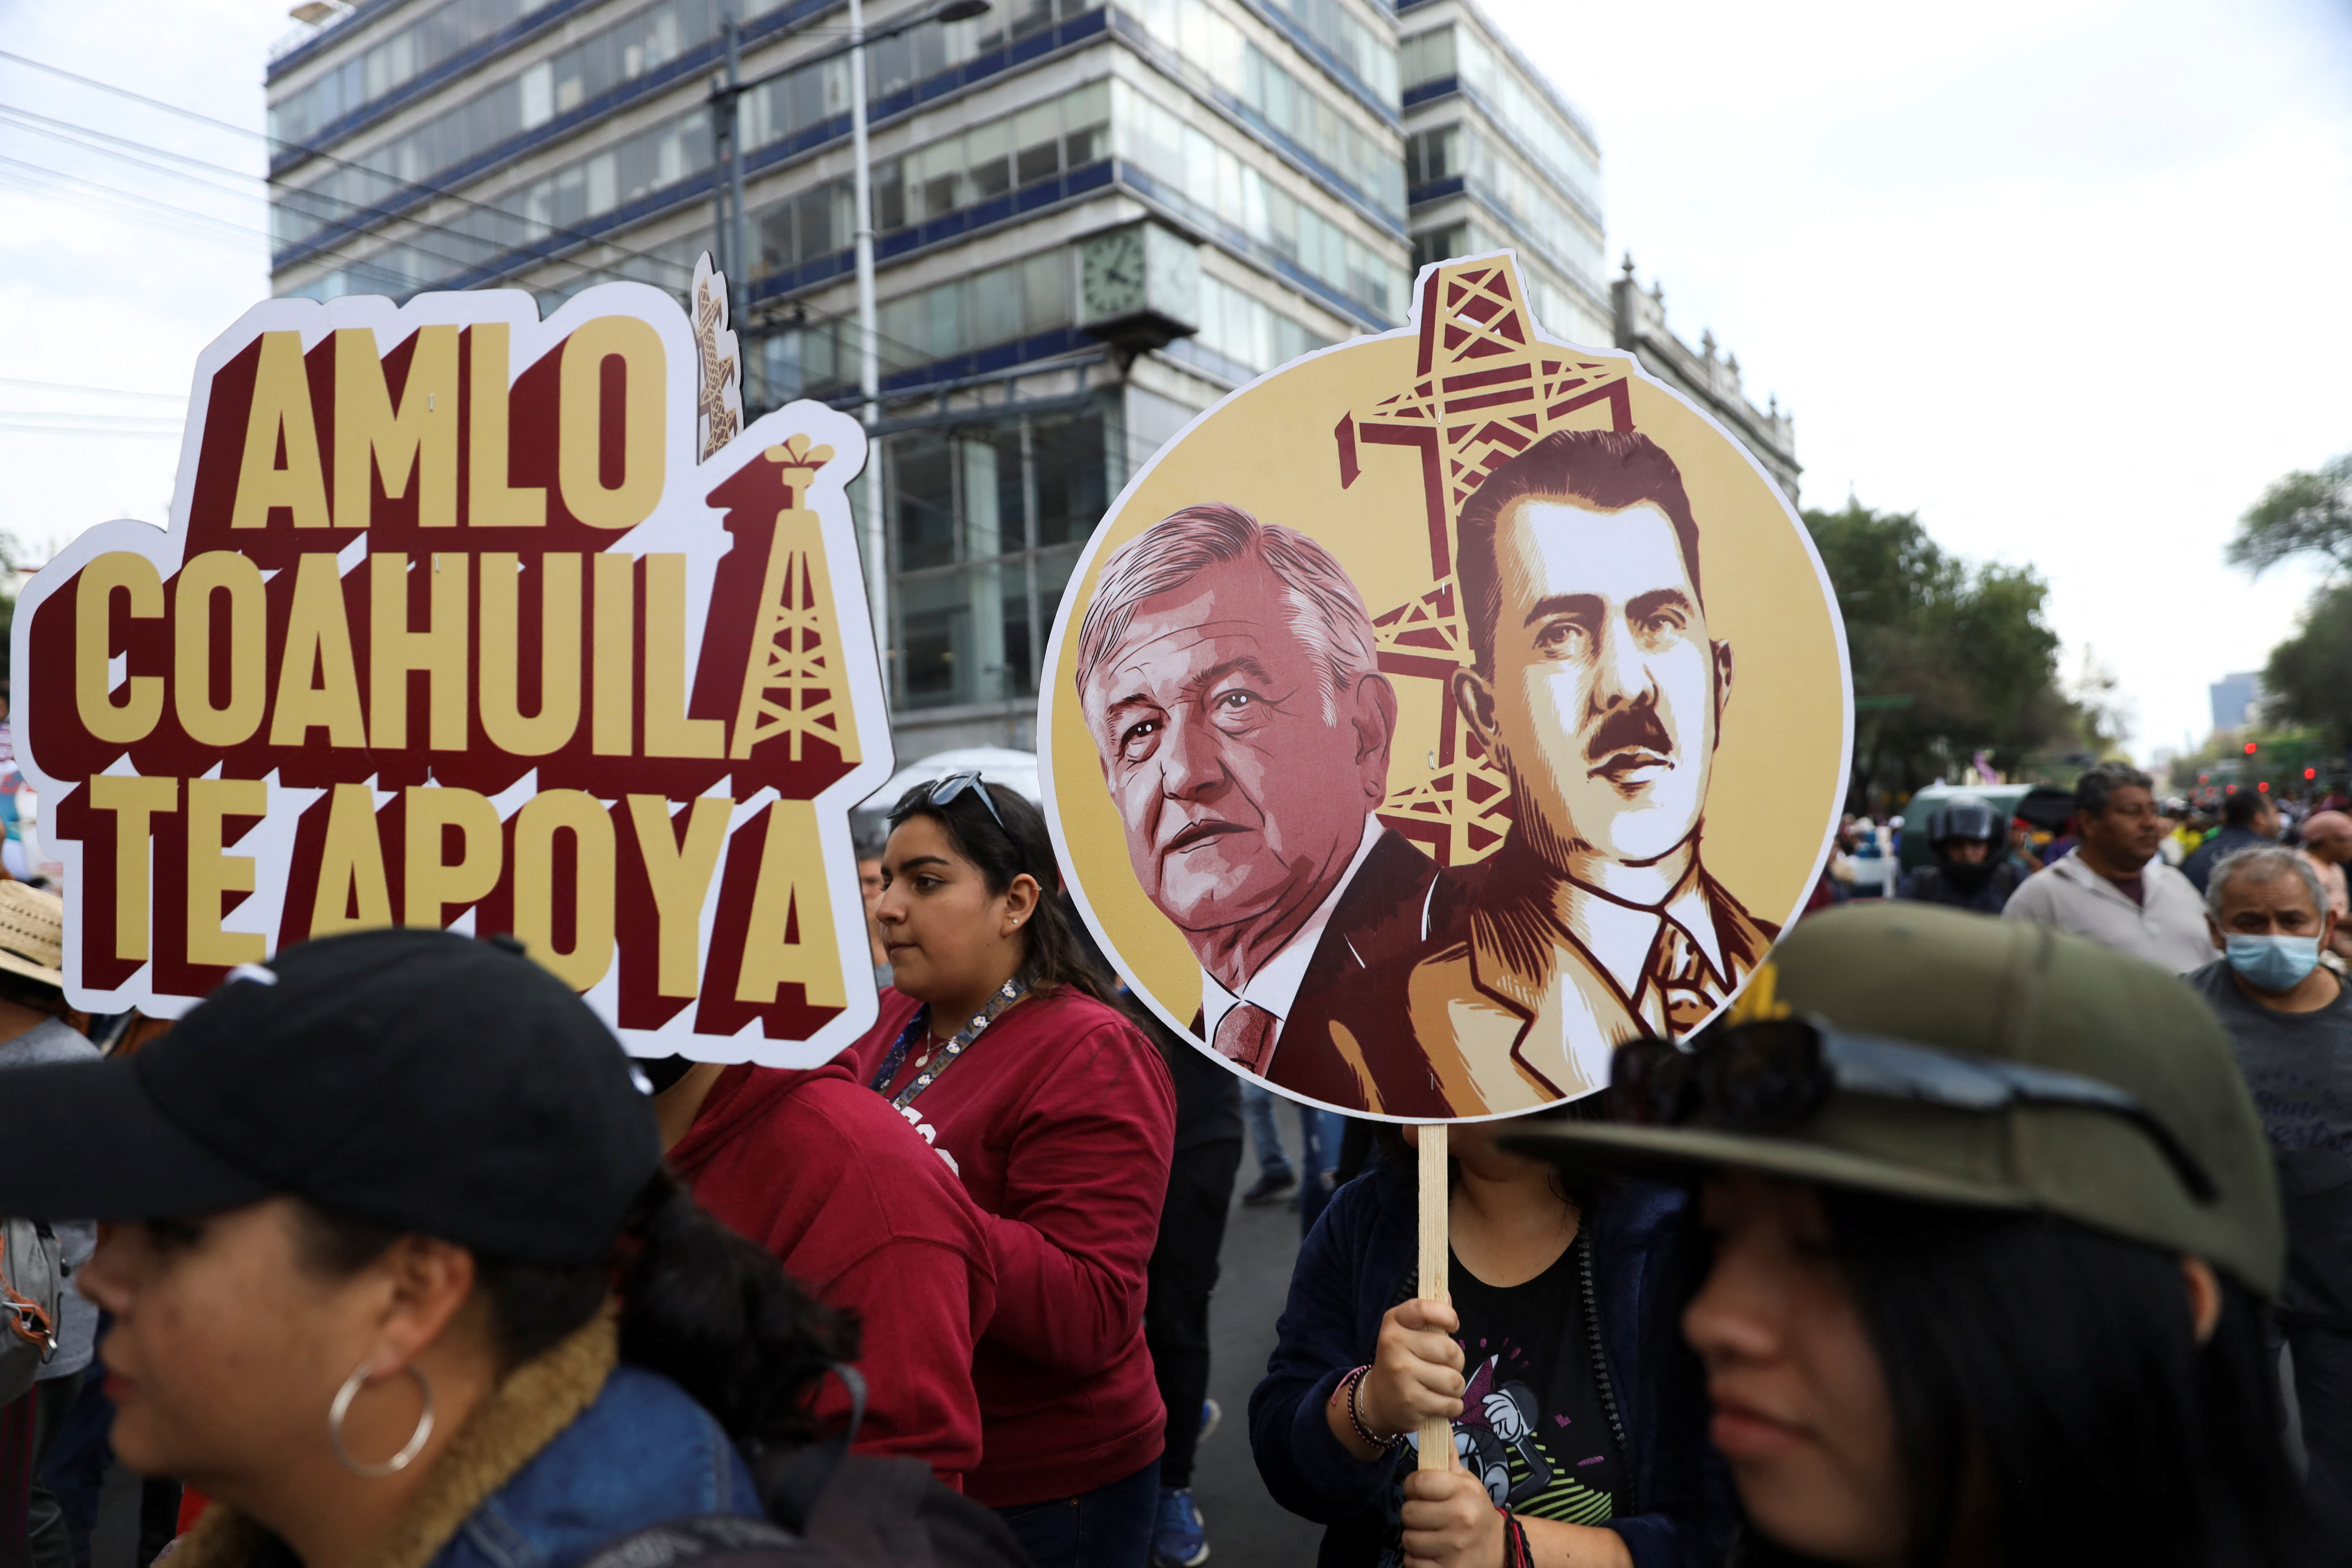 Al lugar del mitin llegaron personas de otros estados en apoyo a AMLO (REUTERS/Luis Cortes)